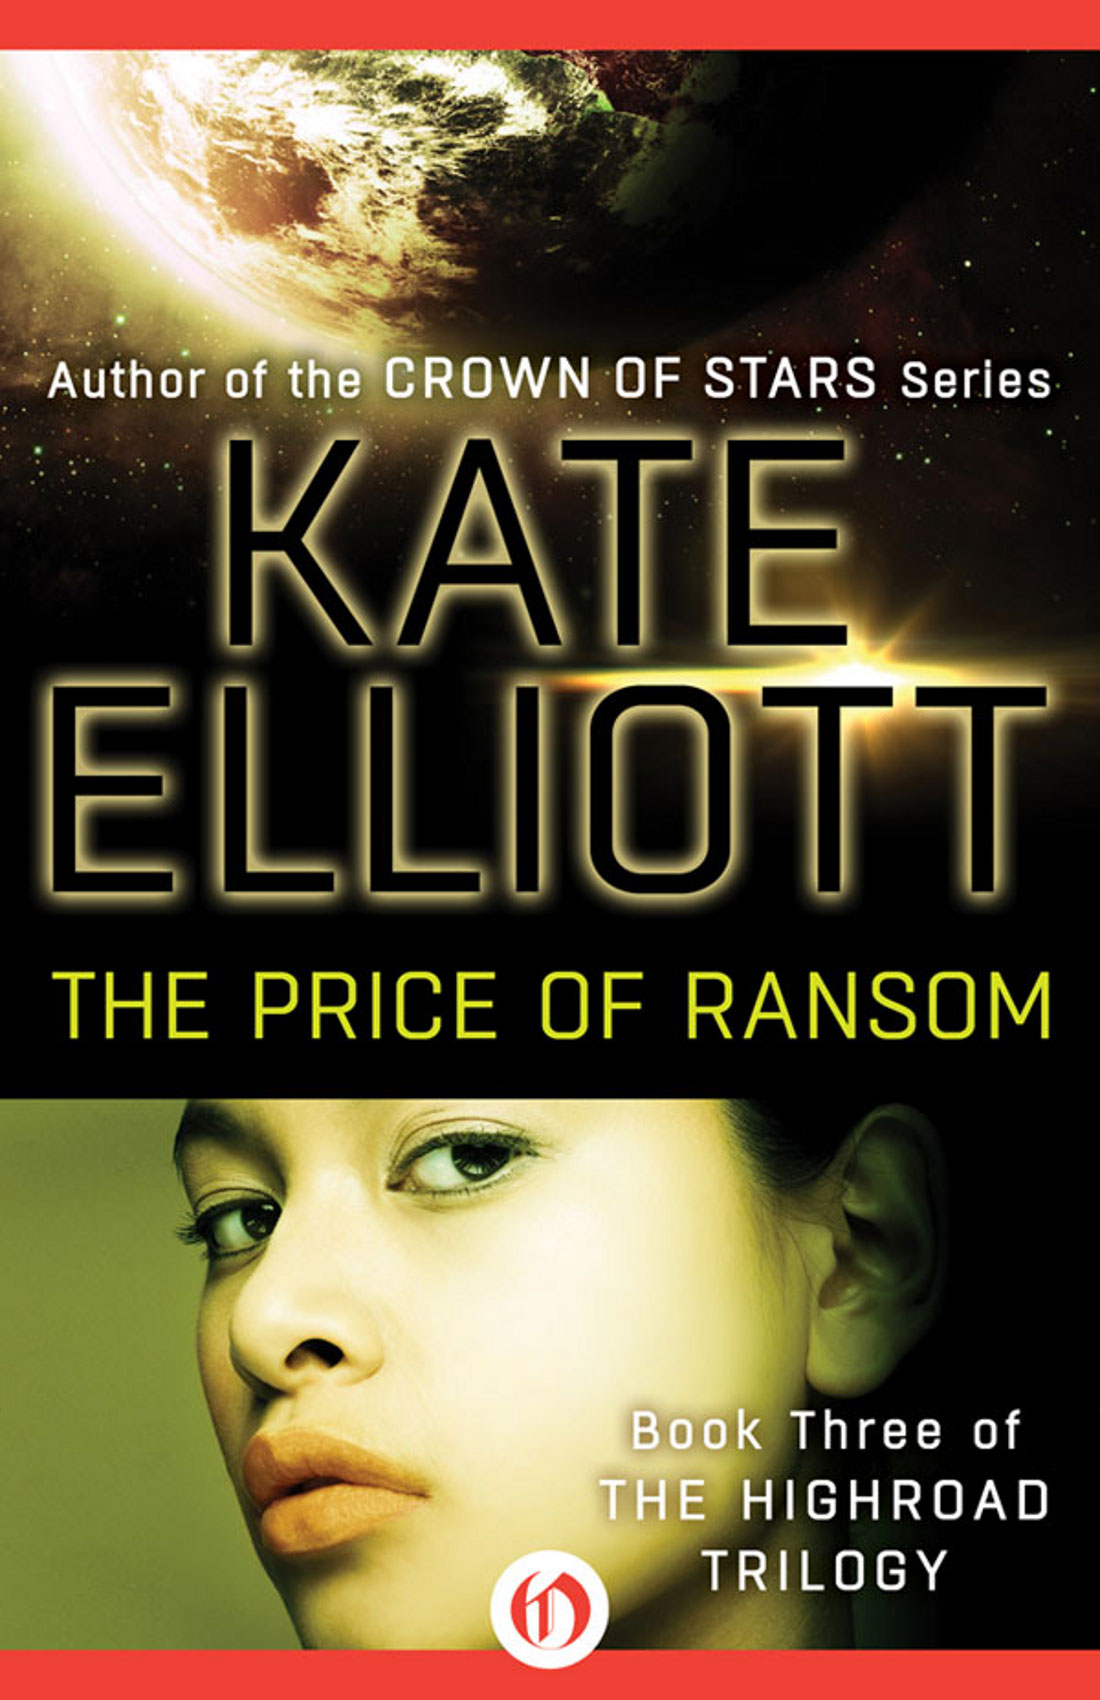 Price of Ransom by Kate Elliott